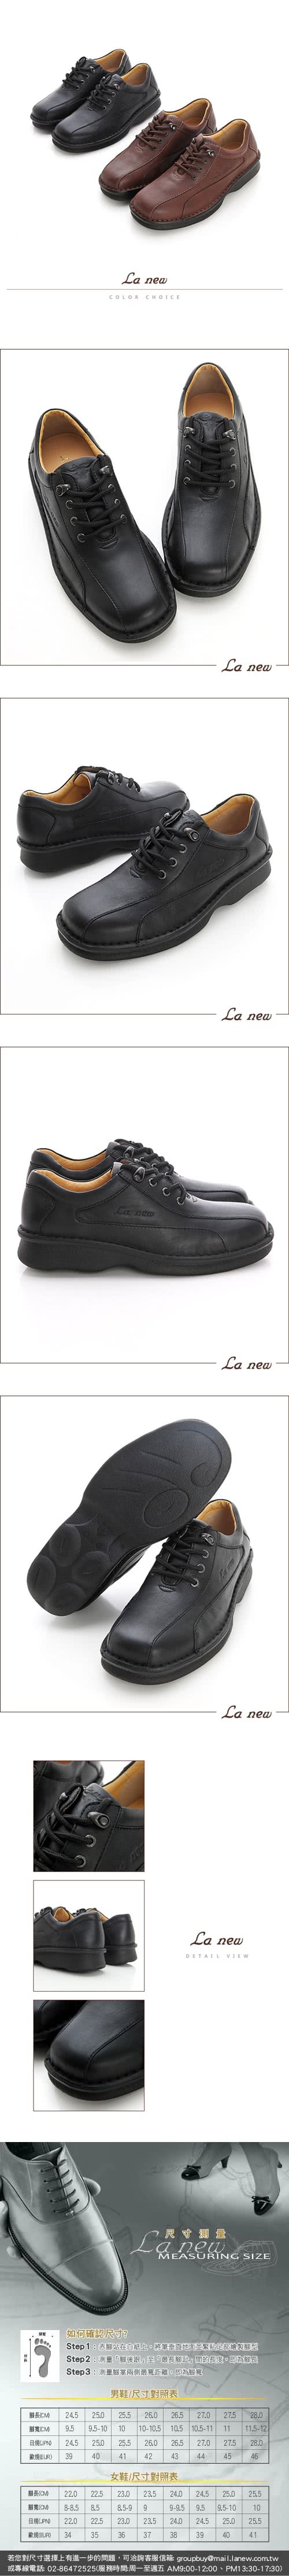 【La new】三密度PU氣墊休閒鞋(男208012430)